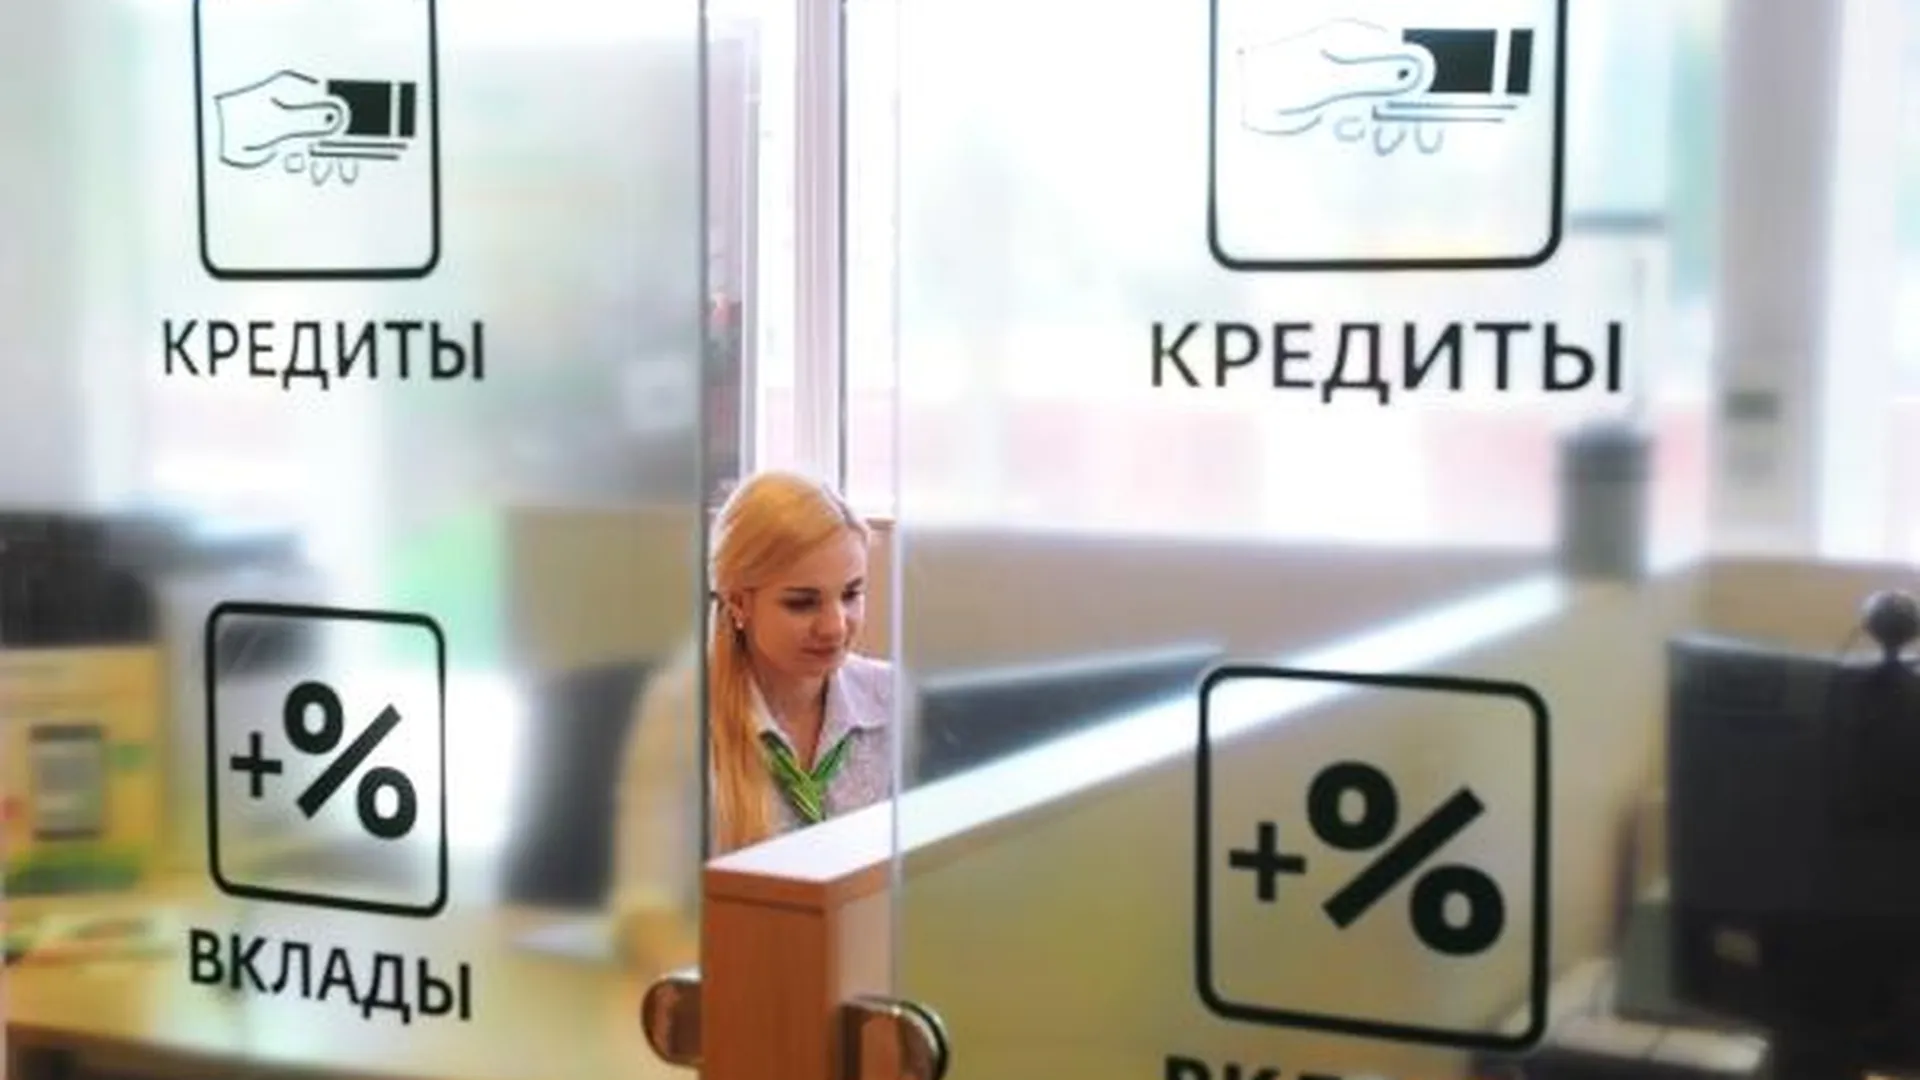 Объем выданных кредитов в России вырос в два раза